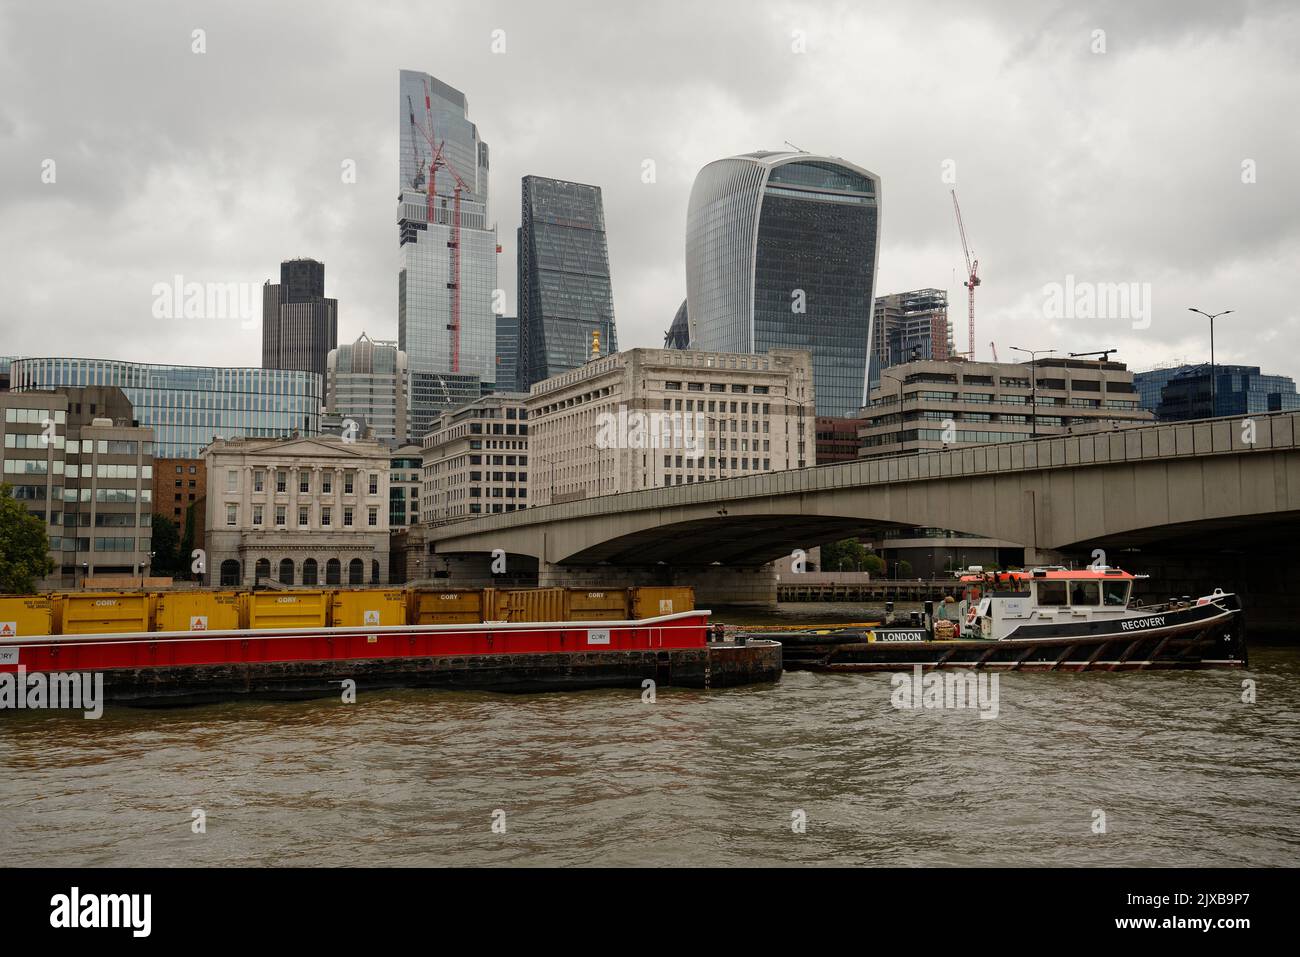 La città di Londra con chiatte piene di container sul Tamigi. Il tiraggio di rimorchiatore è denominato recupero. Foto Stock